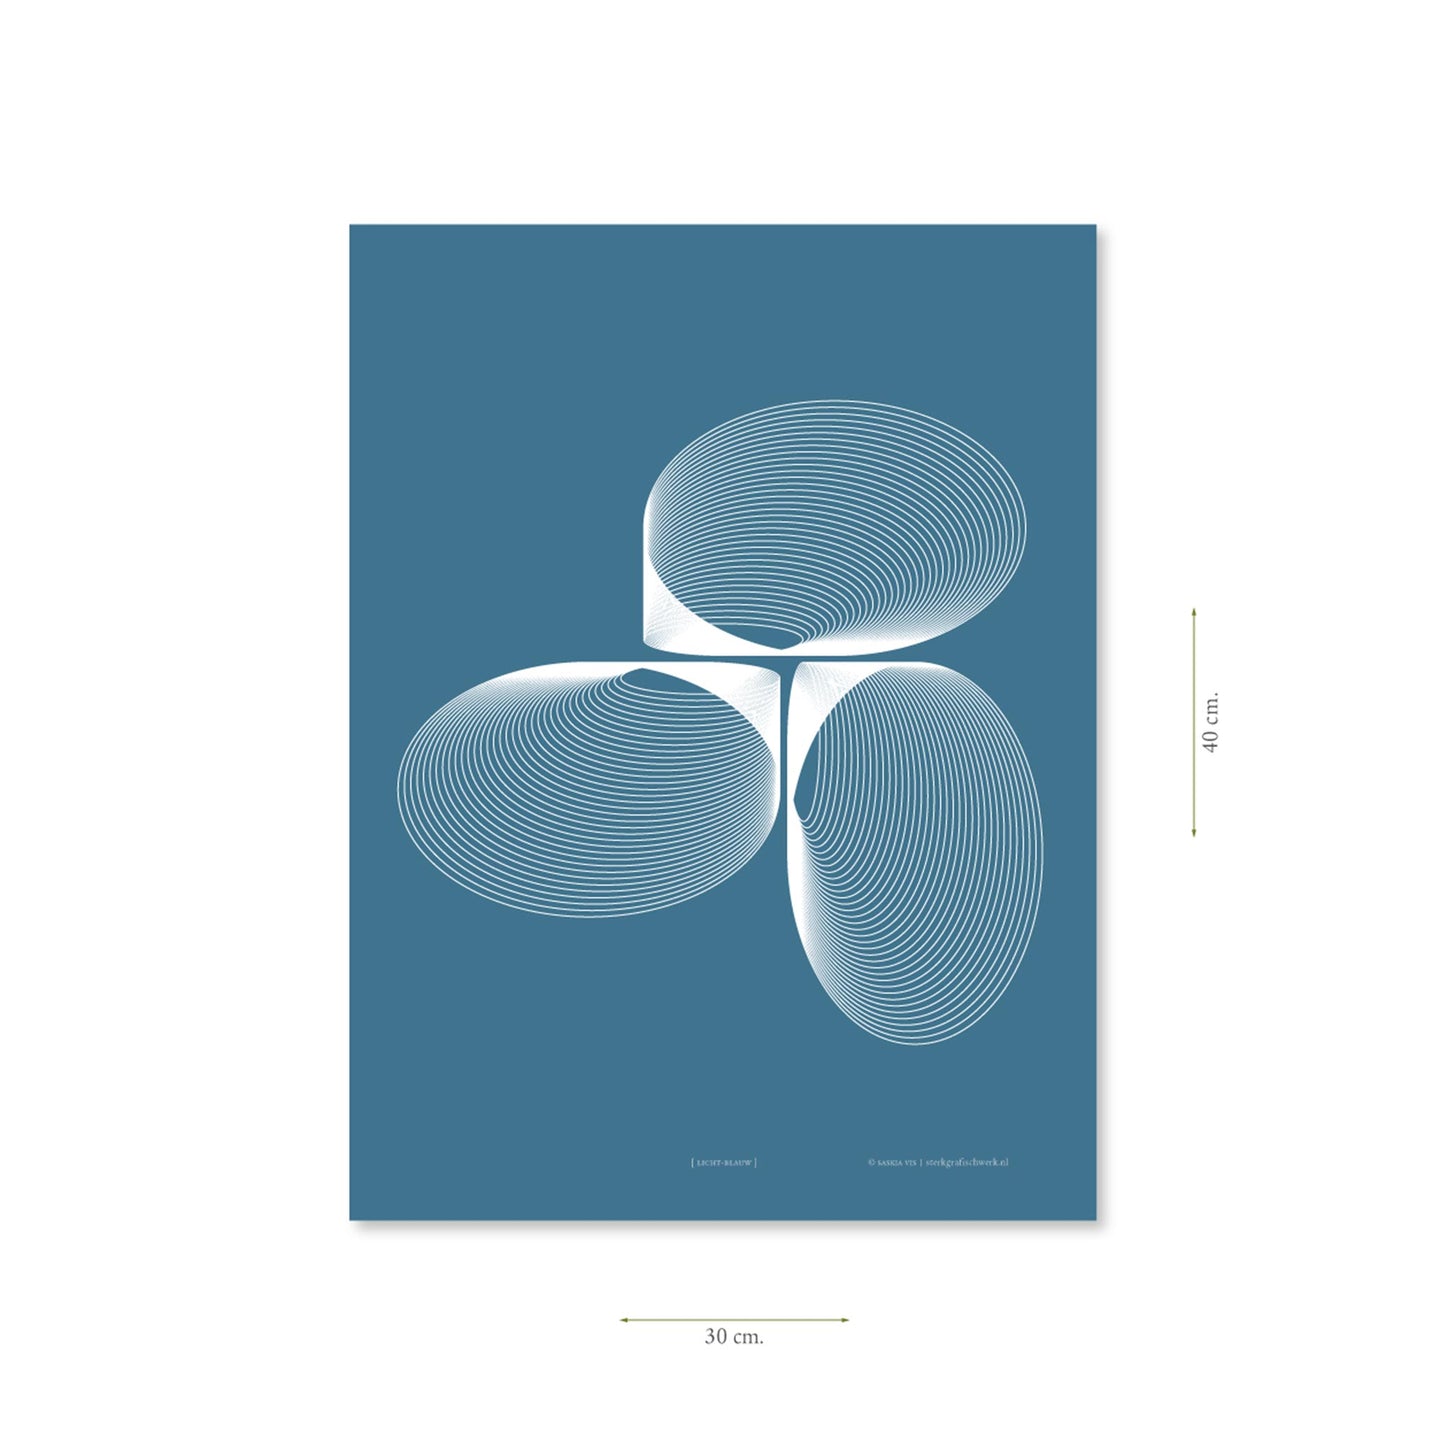 Productafbeelding, poster "licht-blauw", met aanduiding van het formaat erop weergegeven 30 x 40 cm